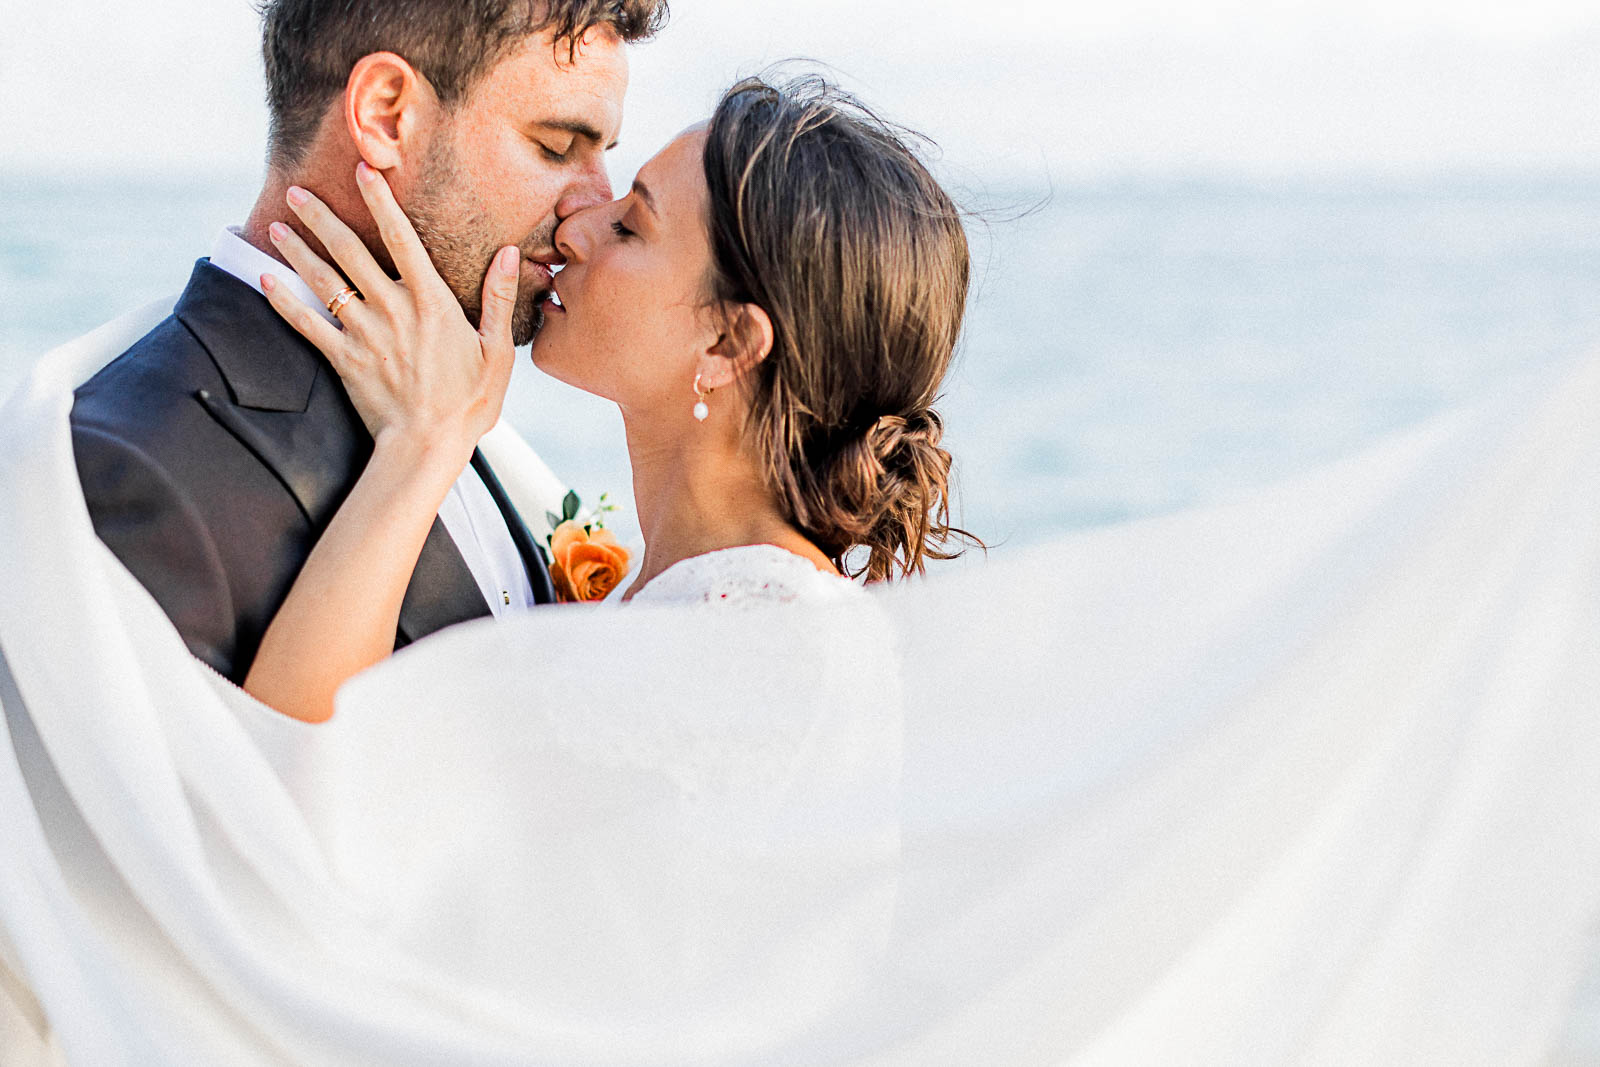 Photographie de Mathieu Dété, photographe de mariage sur l'île de la Réunion à la Saline-les-Bains, présentant un couple enlacé avec le voile de la mariée, en bord de mer